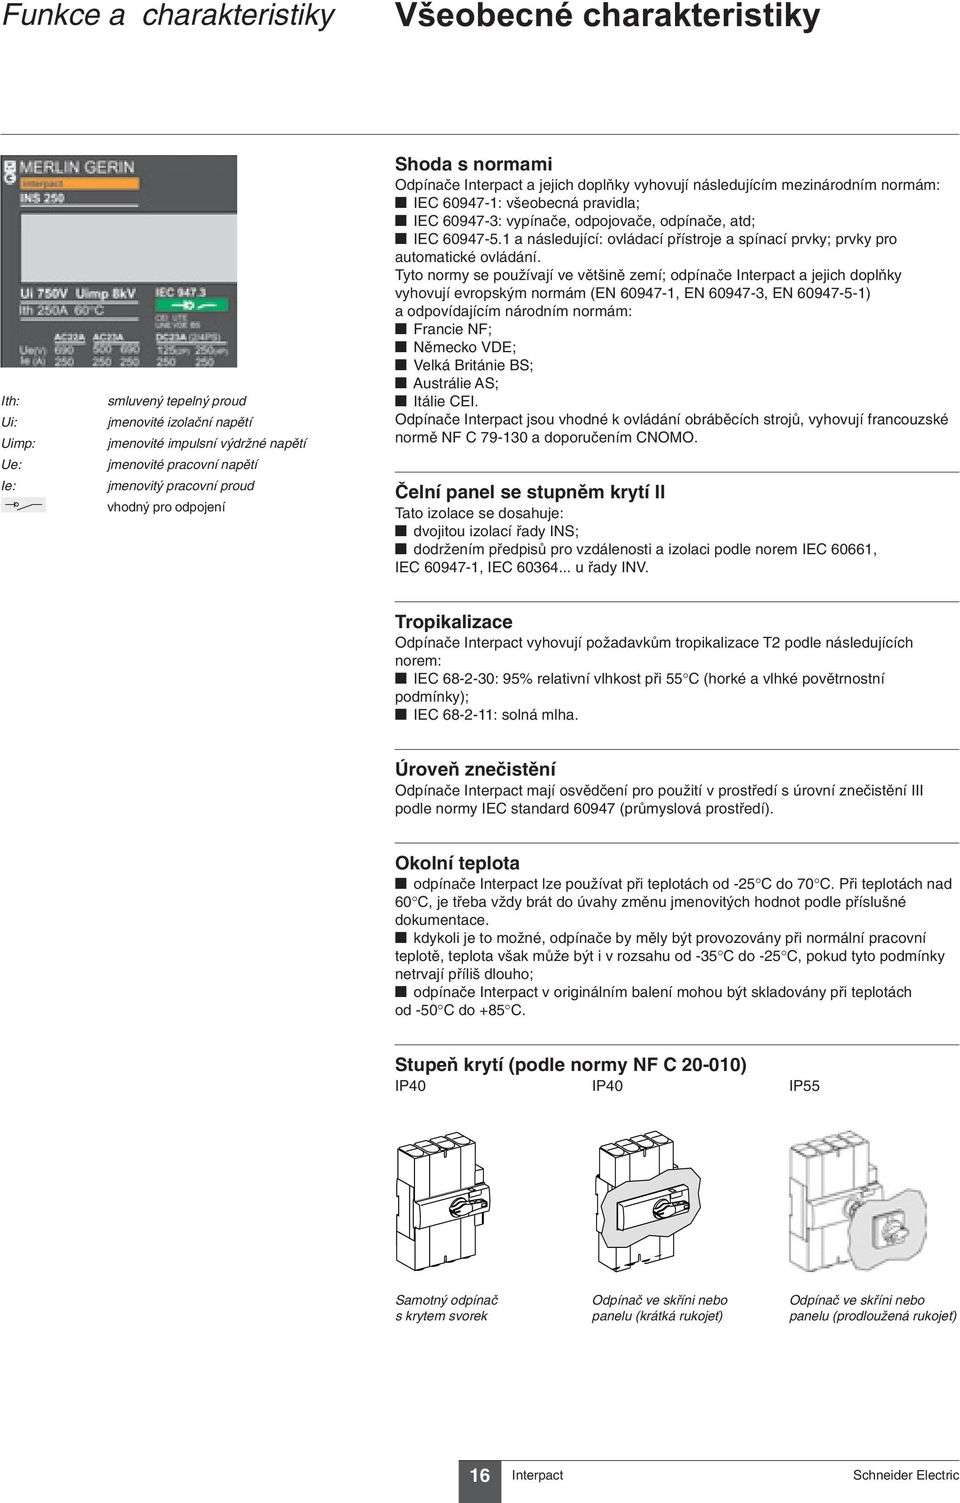 odpínače, atd; t IEC 60947-5.1 a následující: ovládací přístroje a spínací prvky; prvky pro automatické ovládání.